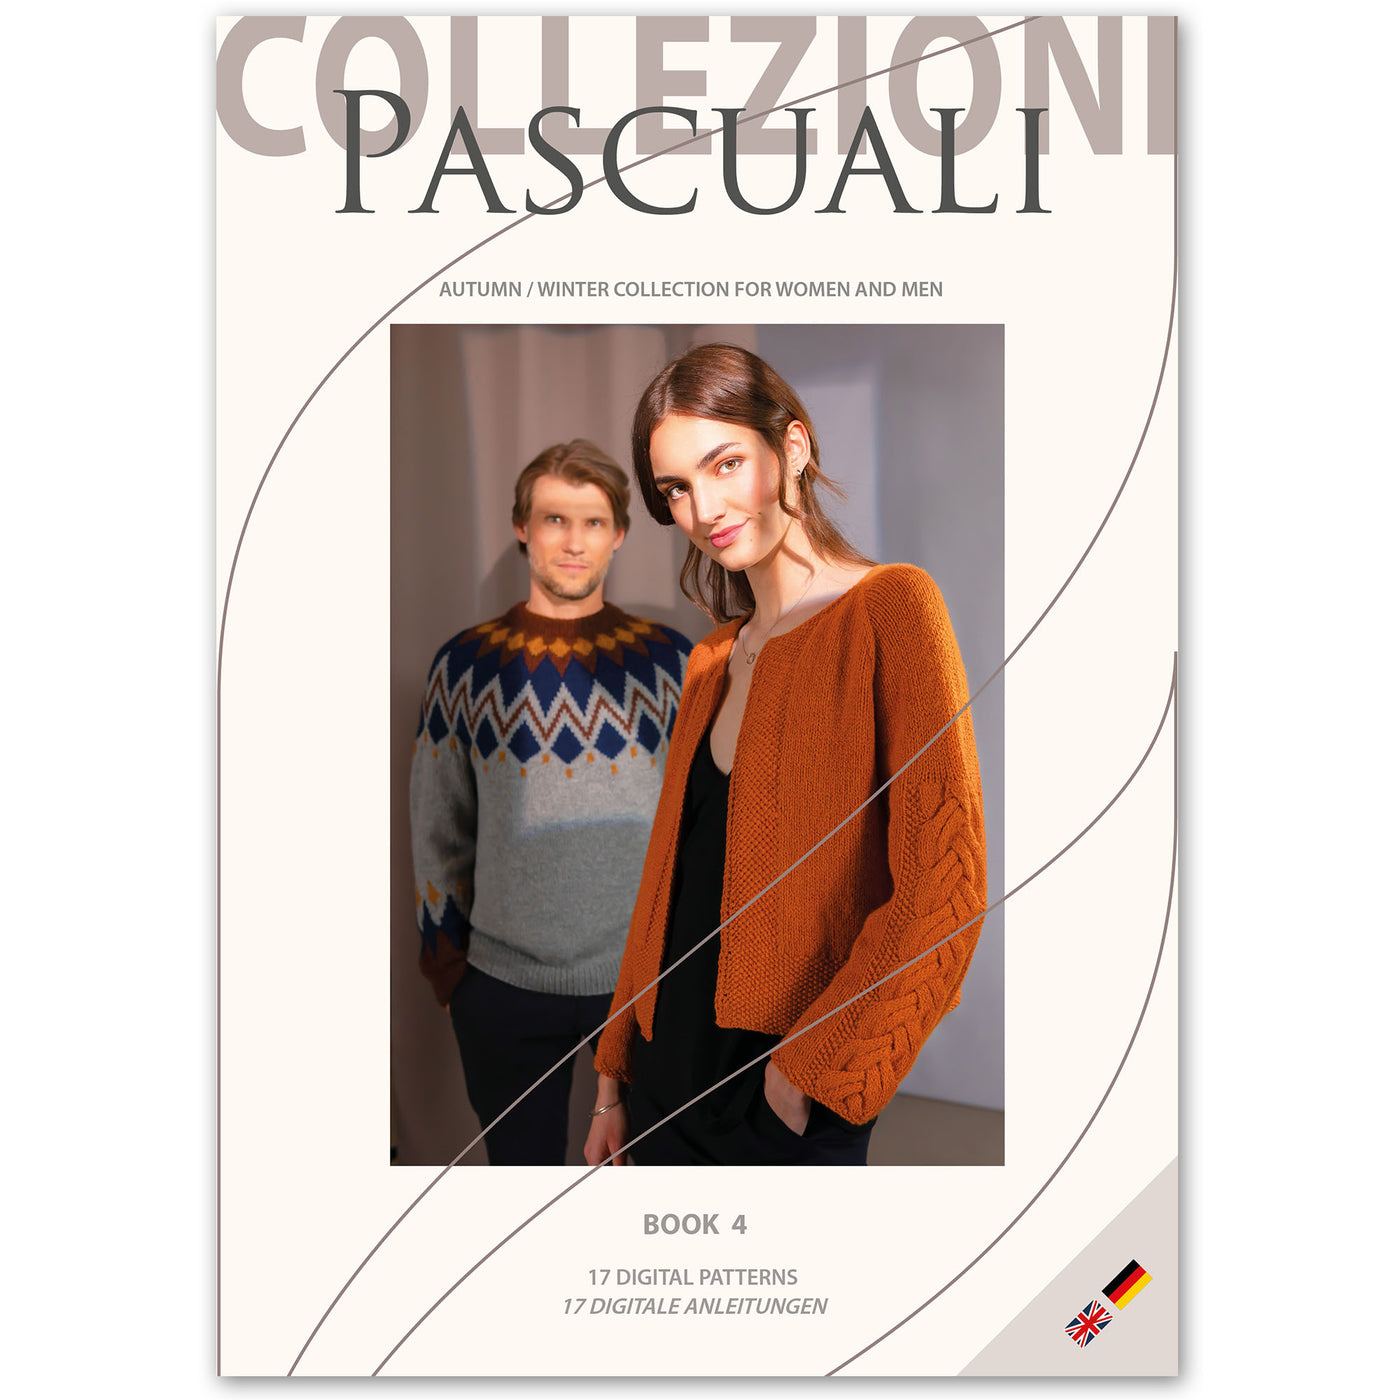 Pascuali Collezioni Book 4 Autumn / Winter 2021